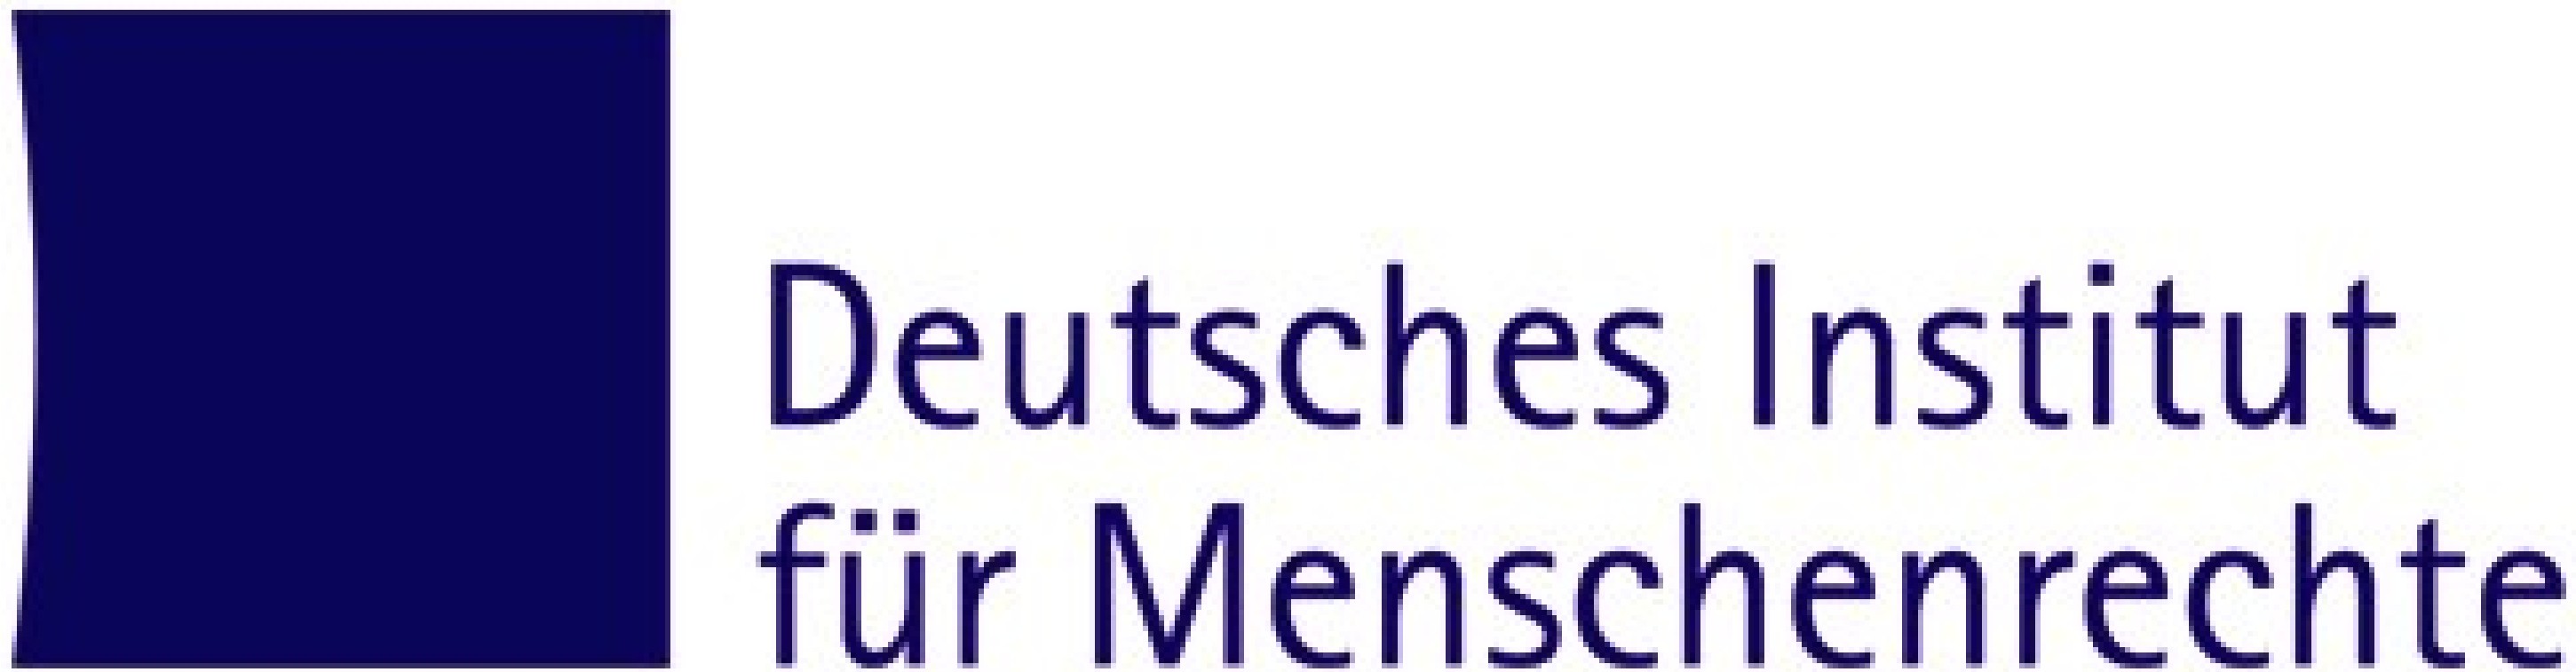 Bildergebnis für fotos vom logo des deutschen menschenrechts instituts